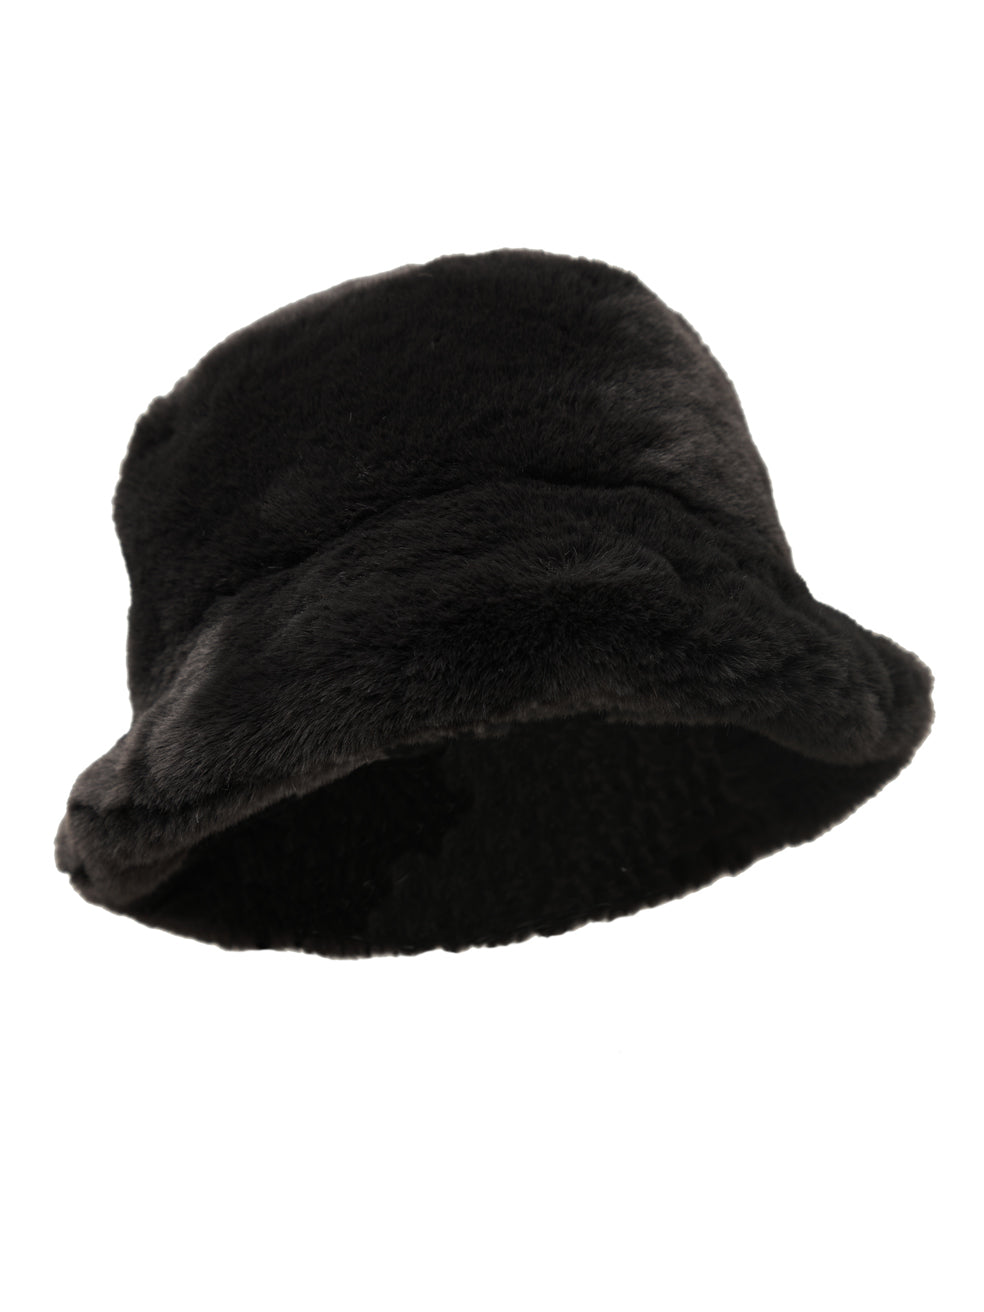 Bucket Hat - Coal Black